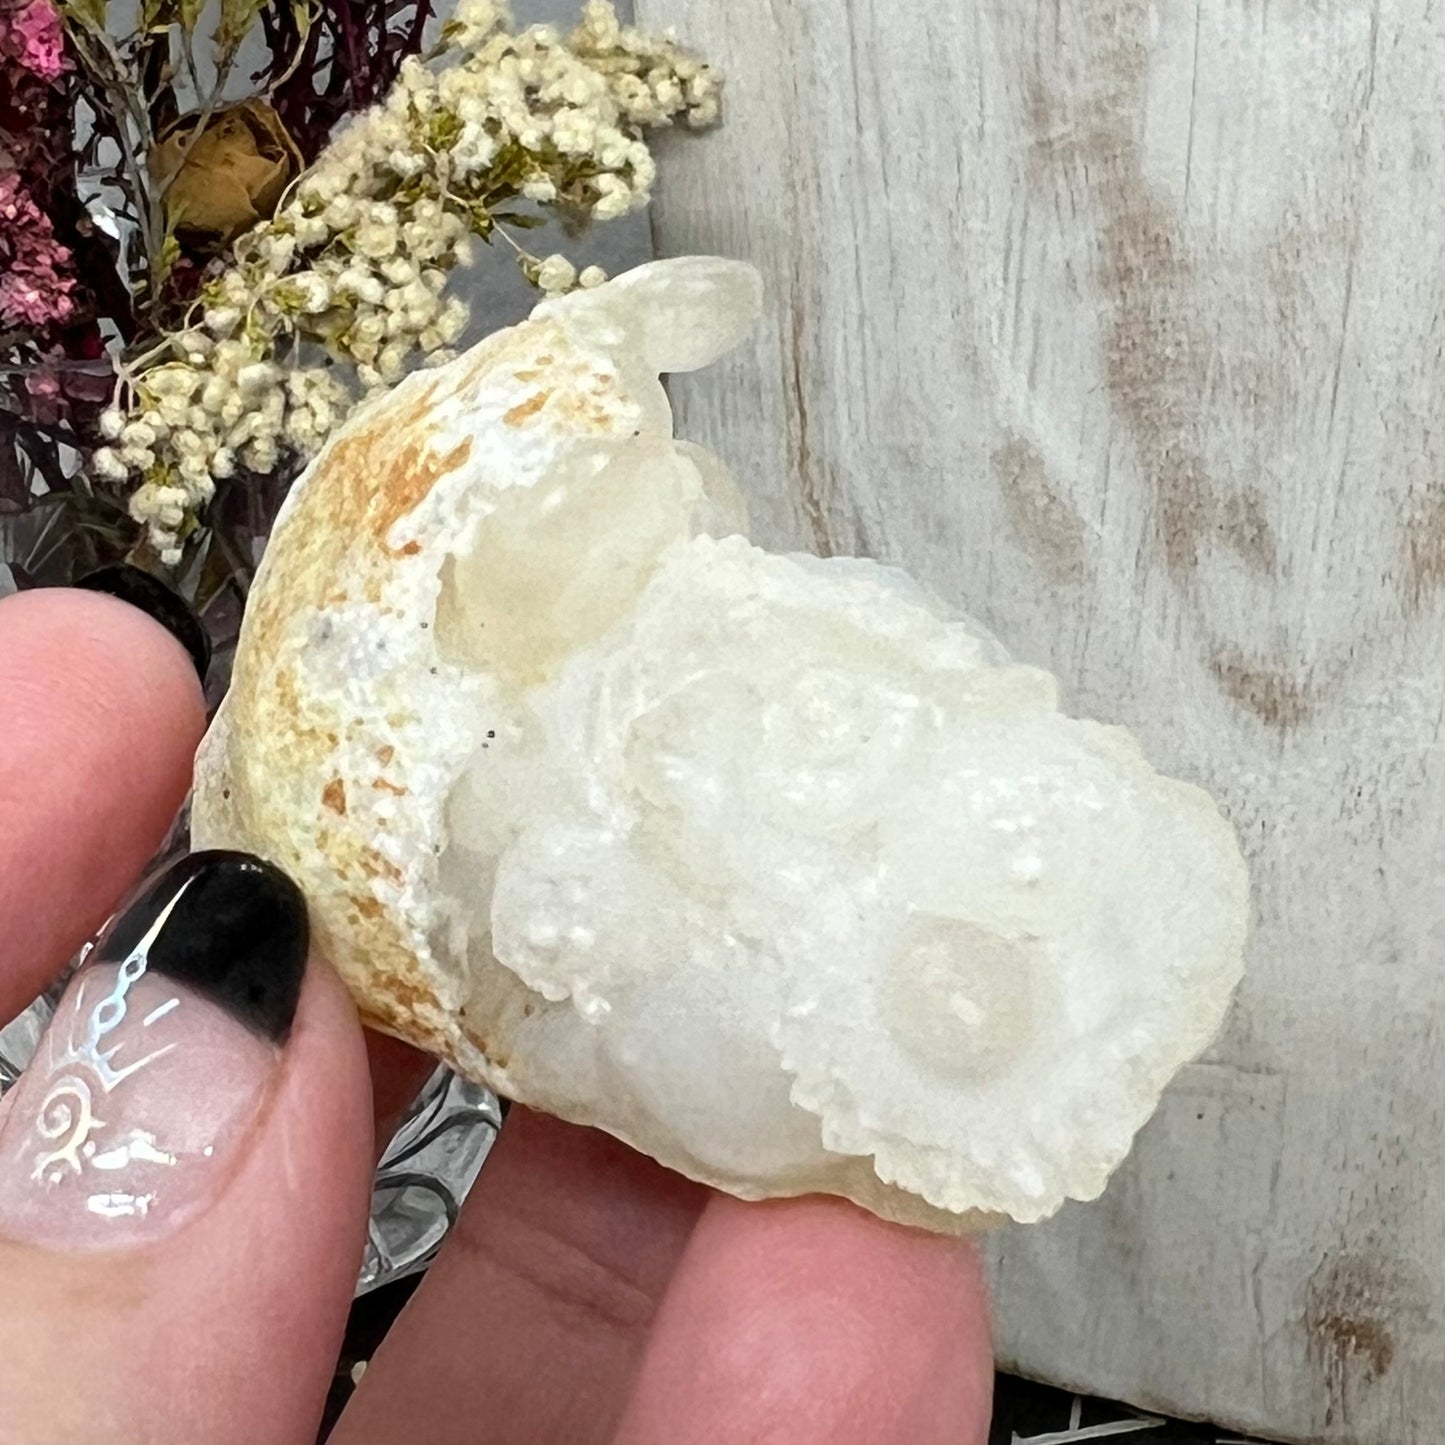 Chalcedony Mamillary Nodules - Botryoidal ‘Womb Stone’ Chalcedony - Morocco